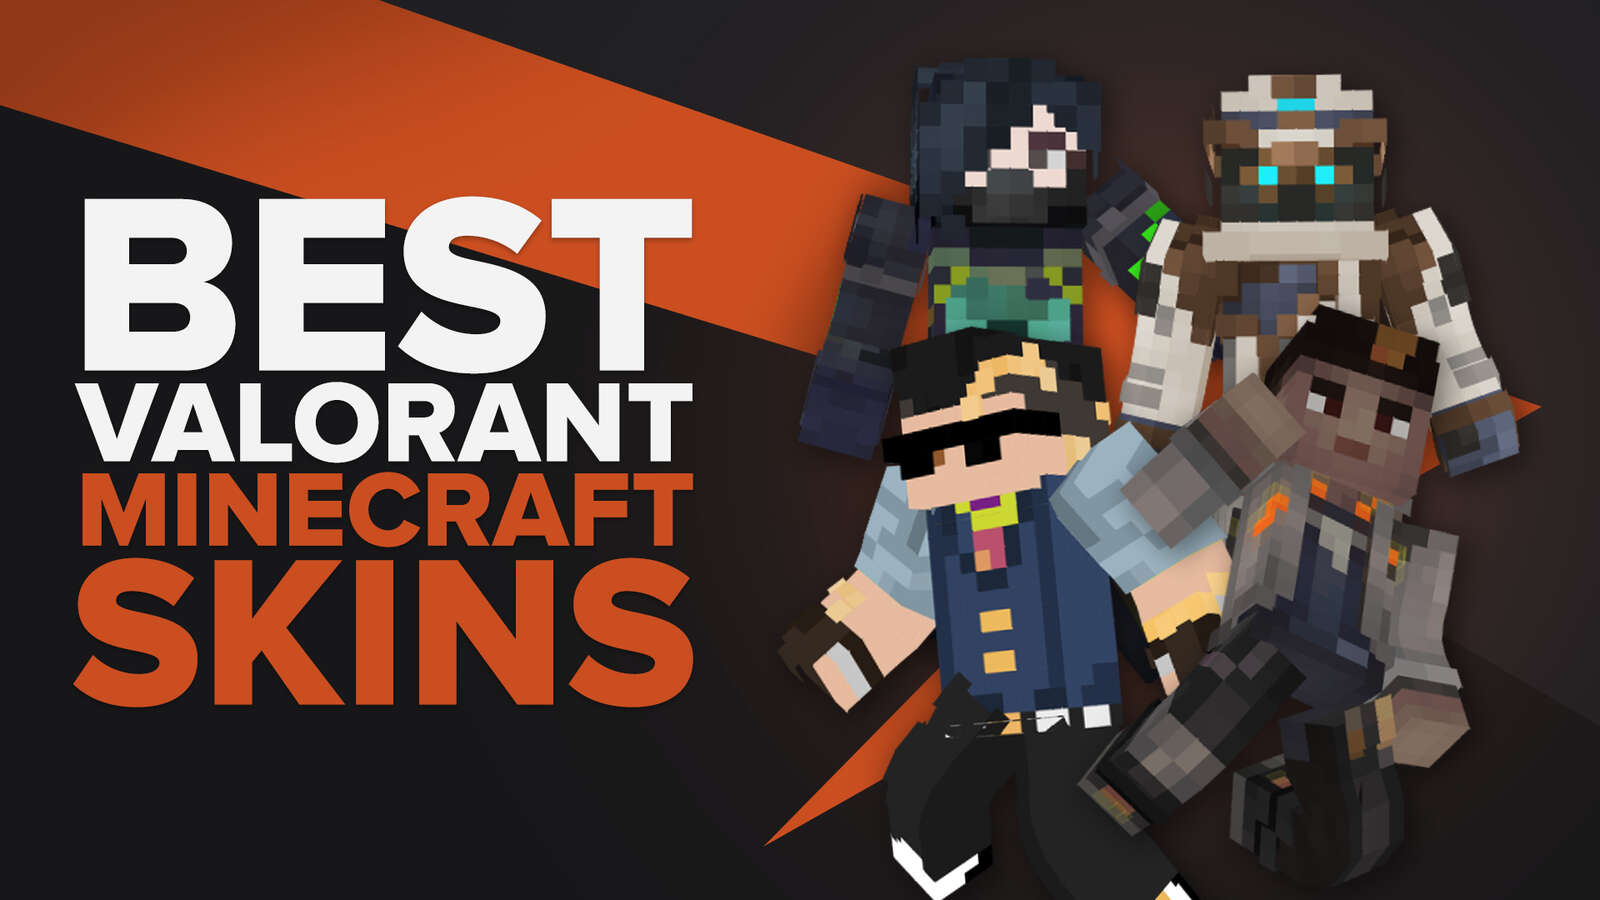 Best Valorant Minecraft Skins in Minecraft